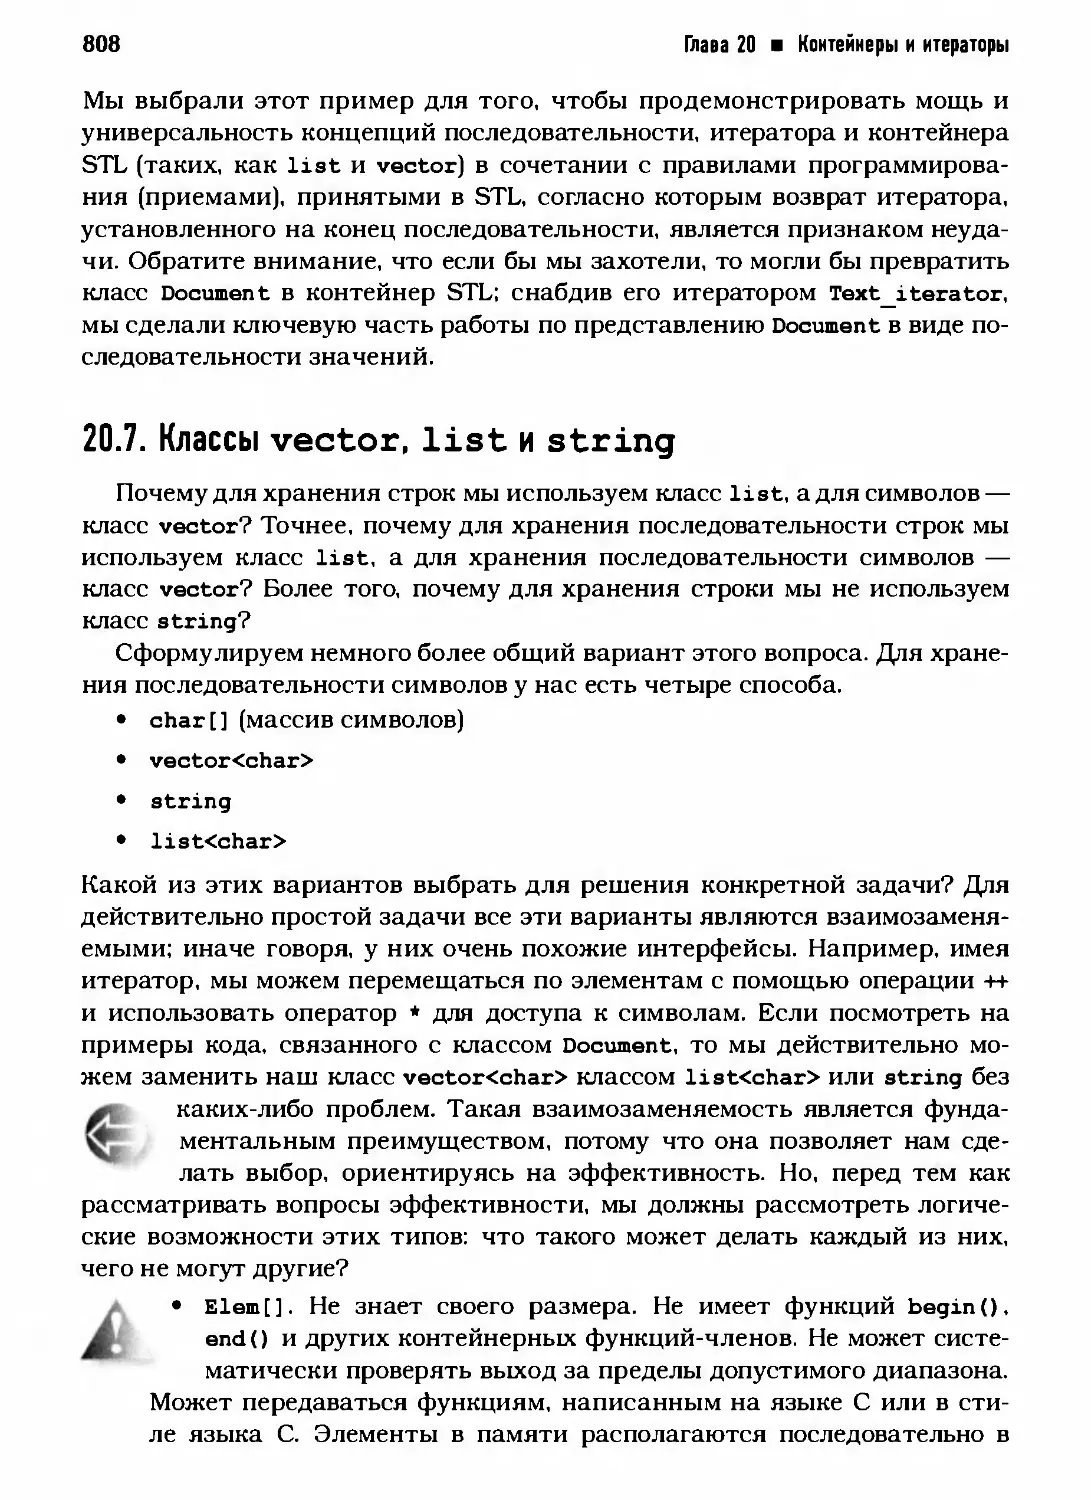 20.7. Классы vector, list и string